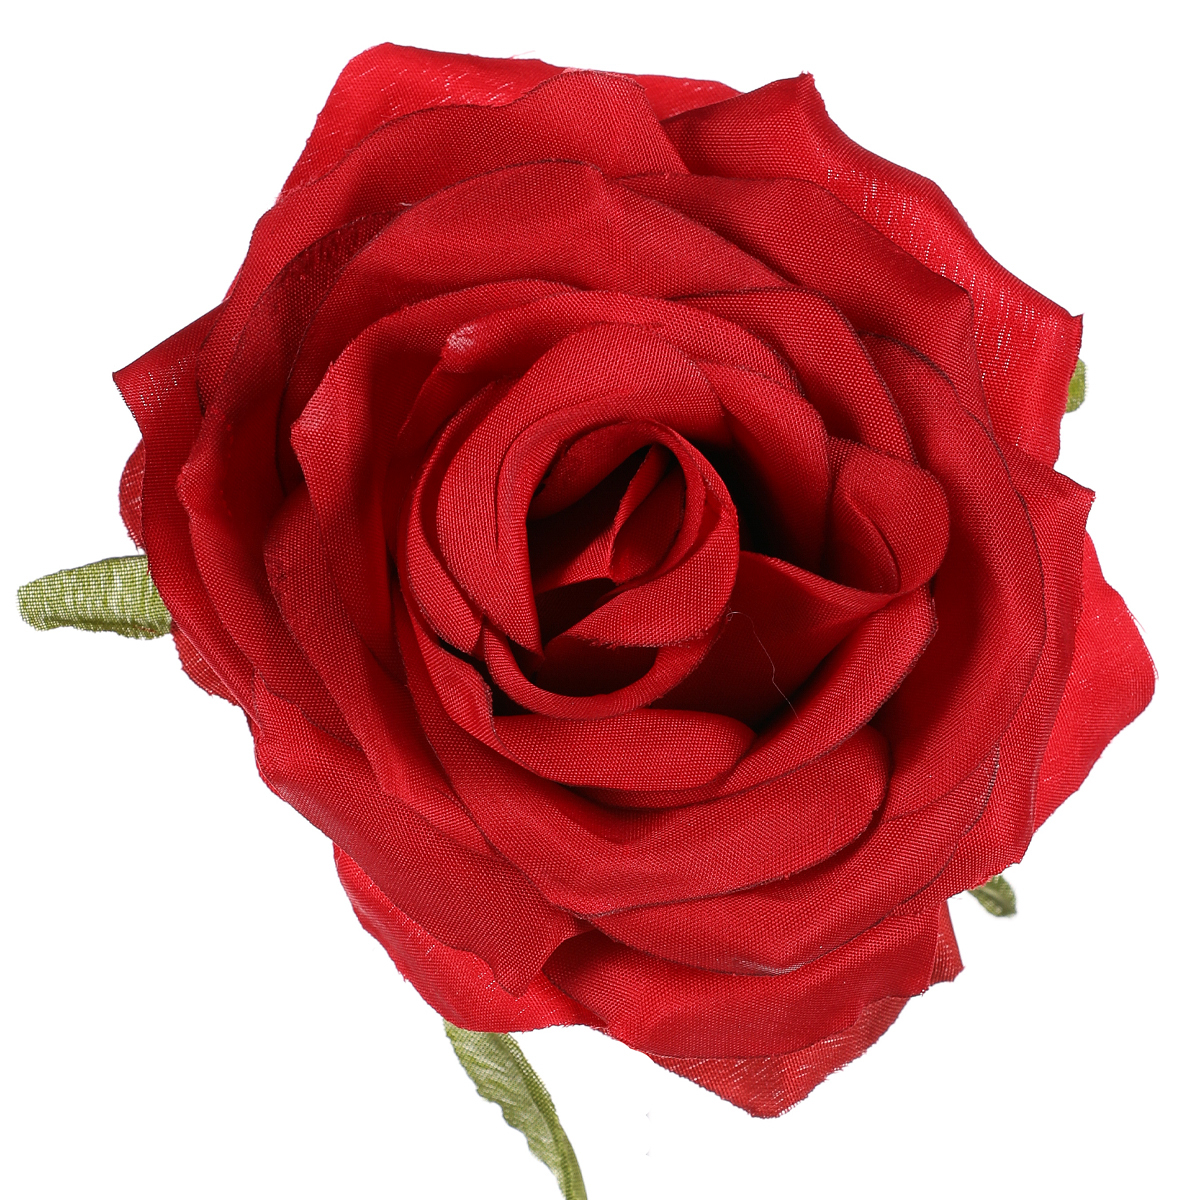 Růže, barva červená. Květina umělá vazbová.  Cena za balení 12 ks